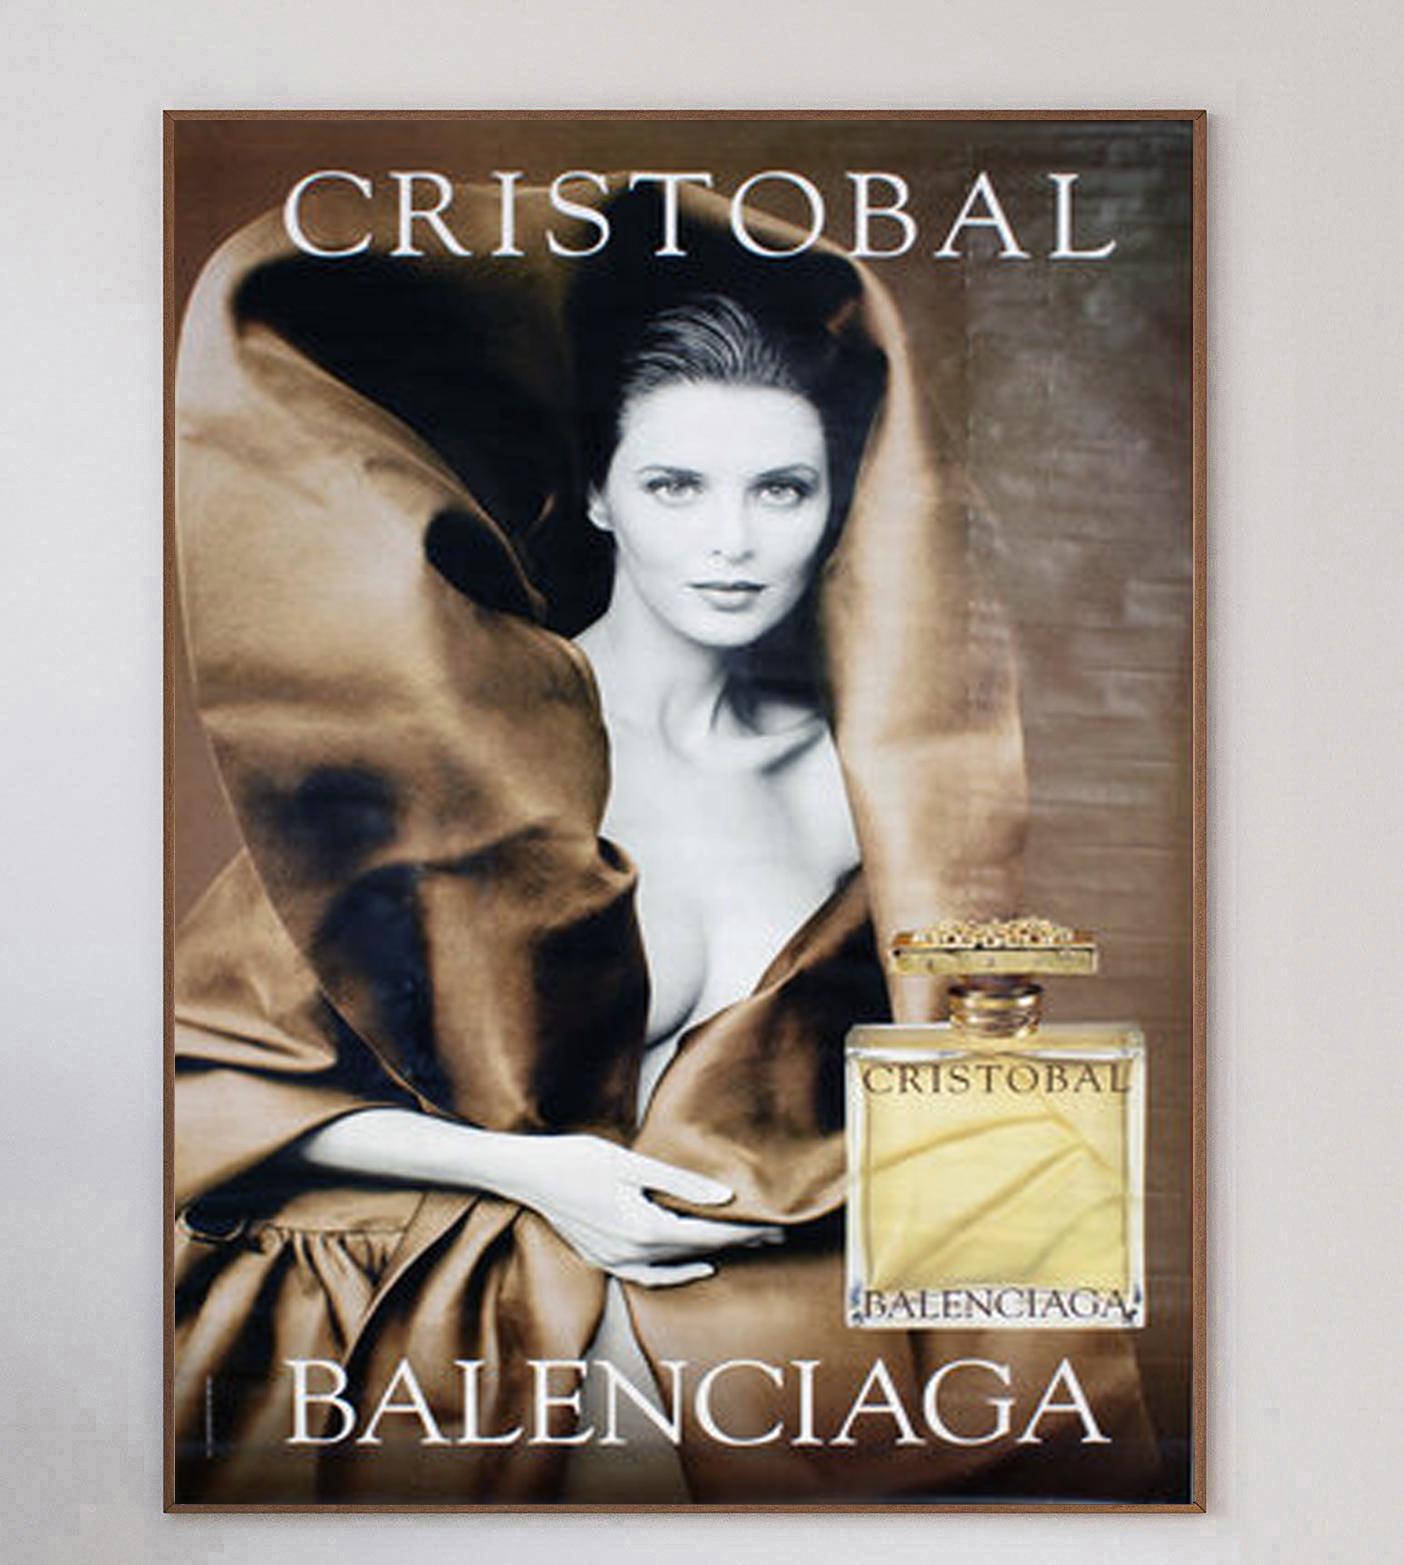 Affiche extra-large promouvant le parfum Balenciaga, Cristobal - l'homonyme du fondateur. Cette superbe et rare affiche représente le mannequin et l'actrice Isabella Rossellini et est sortie en 1999.

Cristobal Balenciaga a fondé la maison de